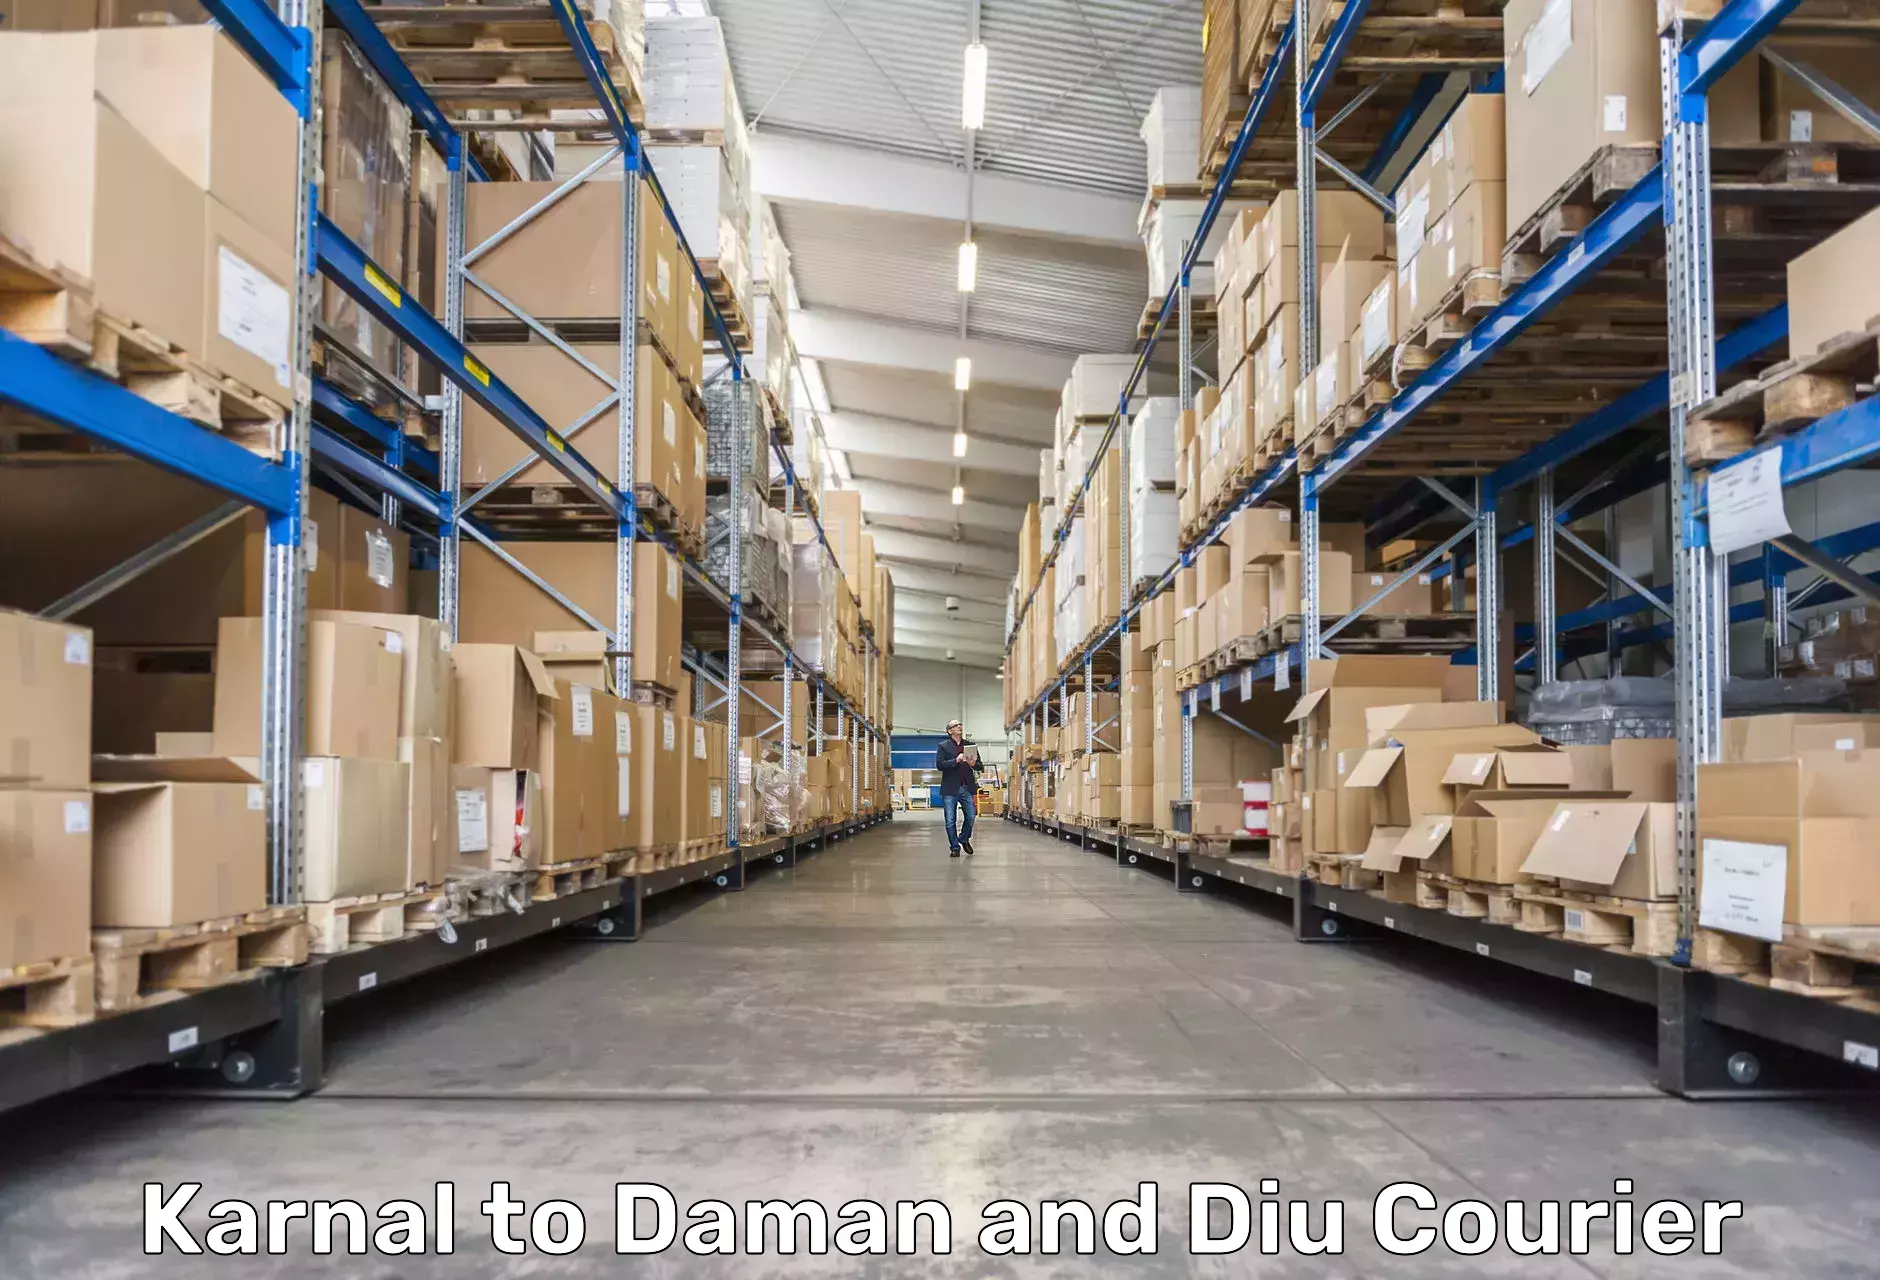 International courier rates Karnal to Daman and Diu